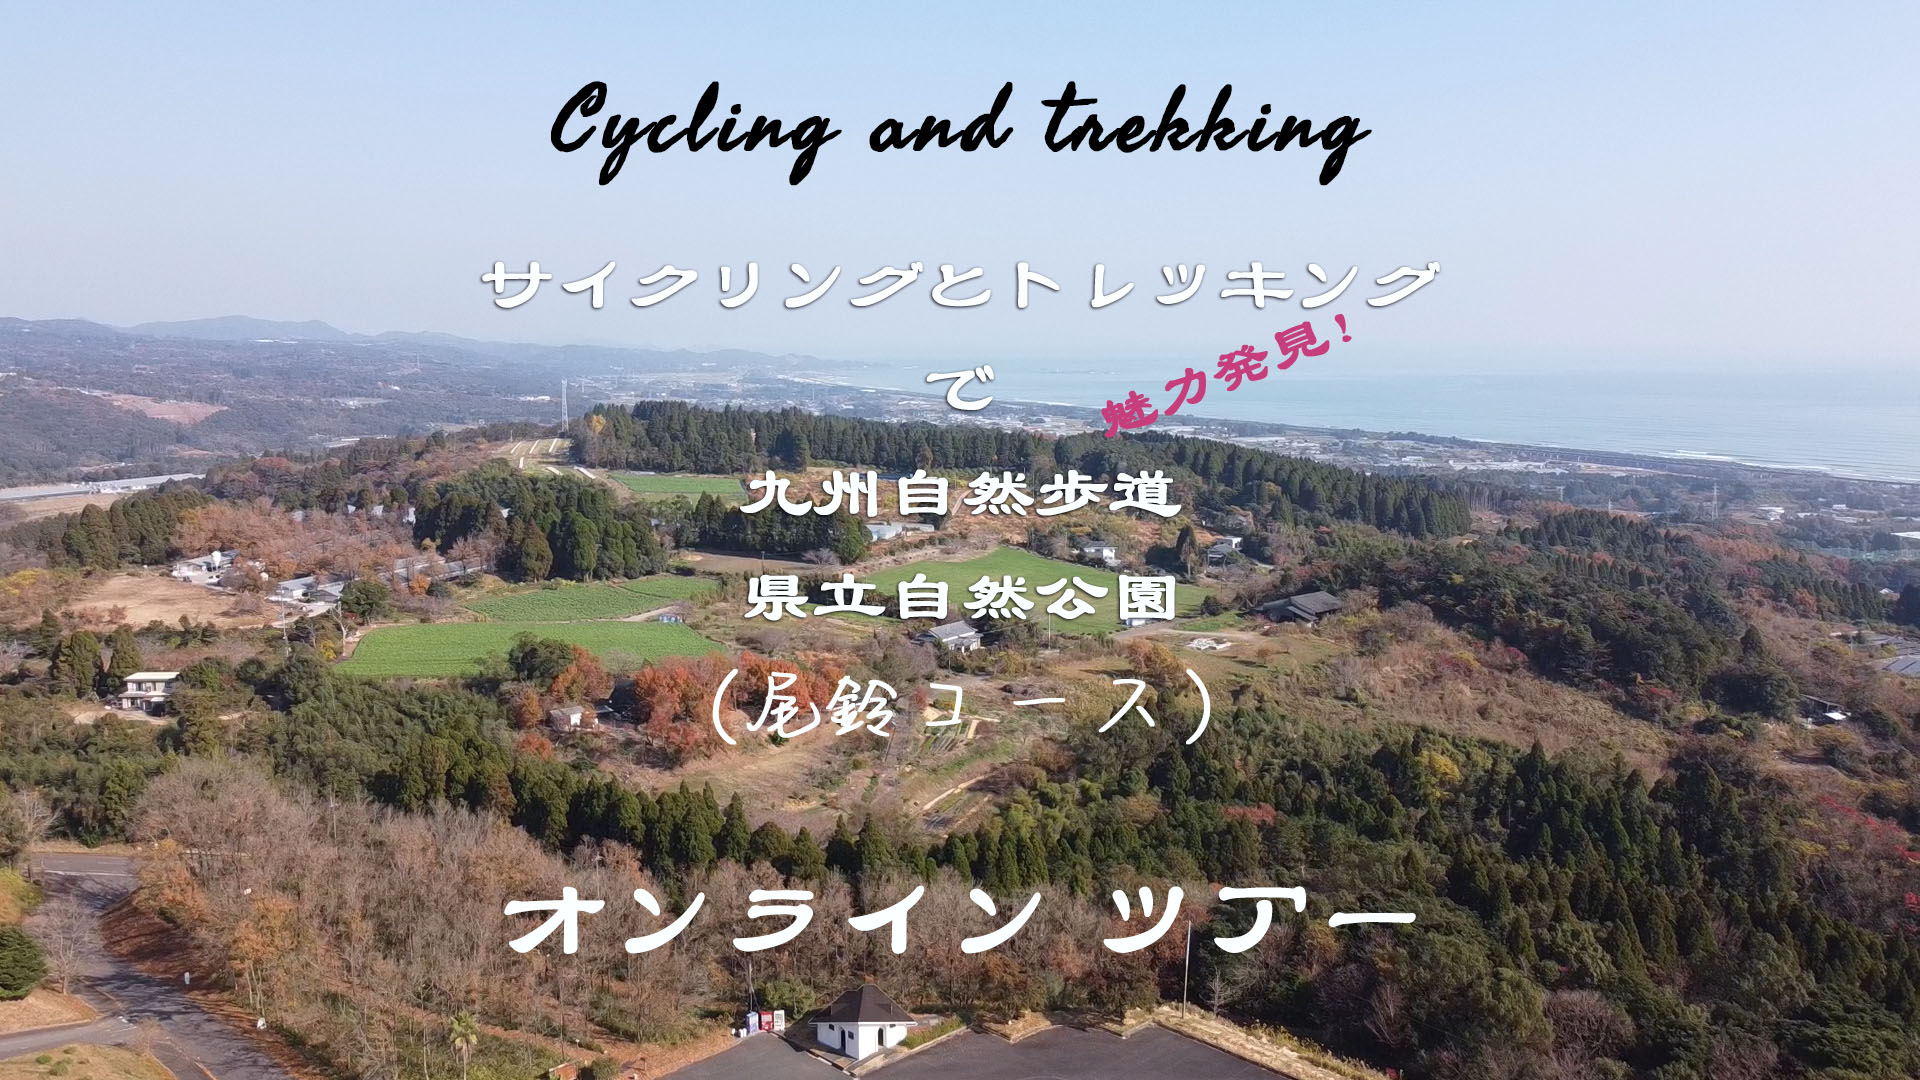 九州自然歩道サイクリングとトレッキングのイメージ